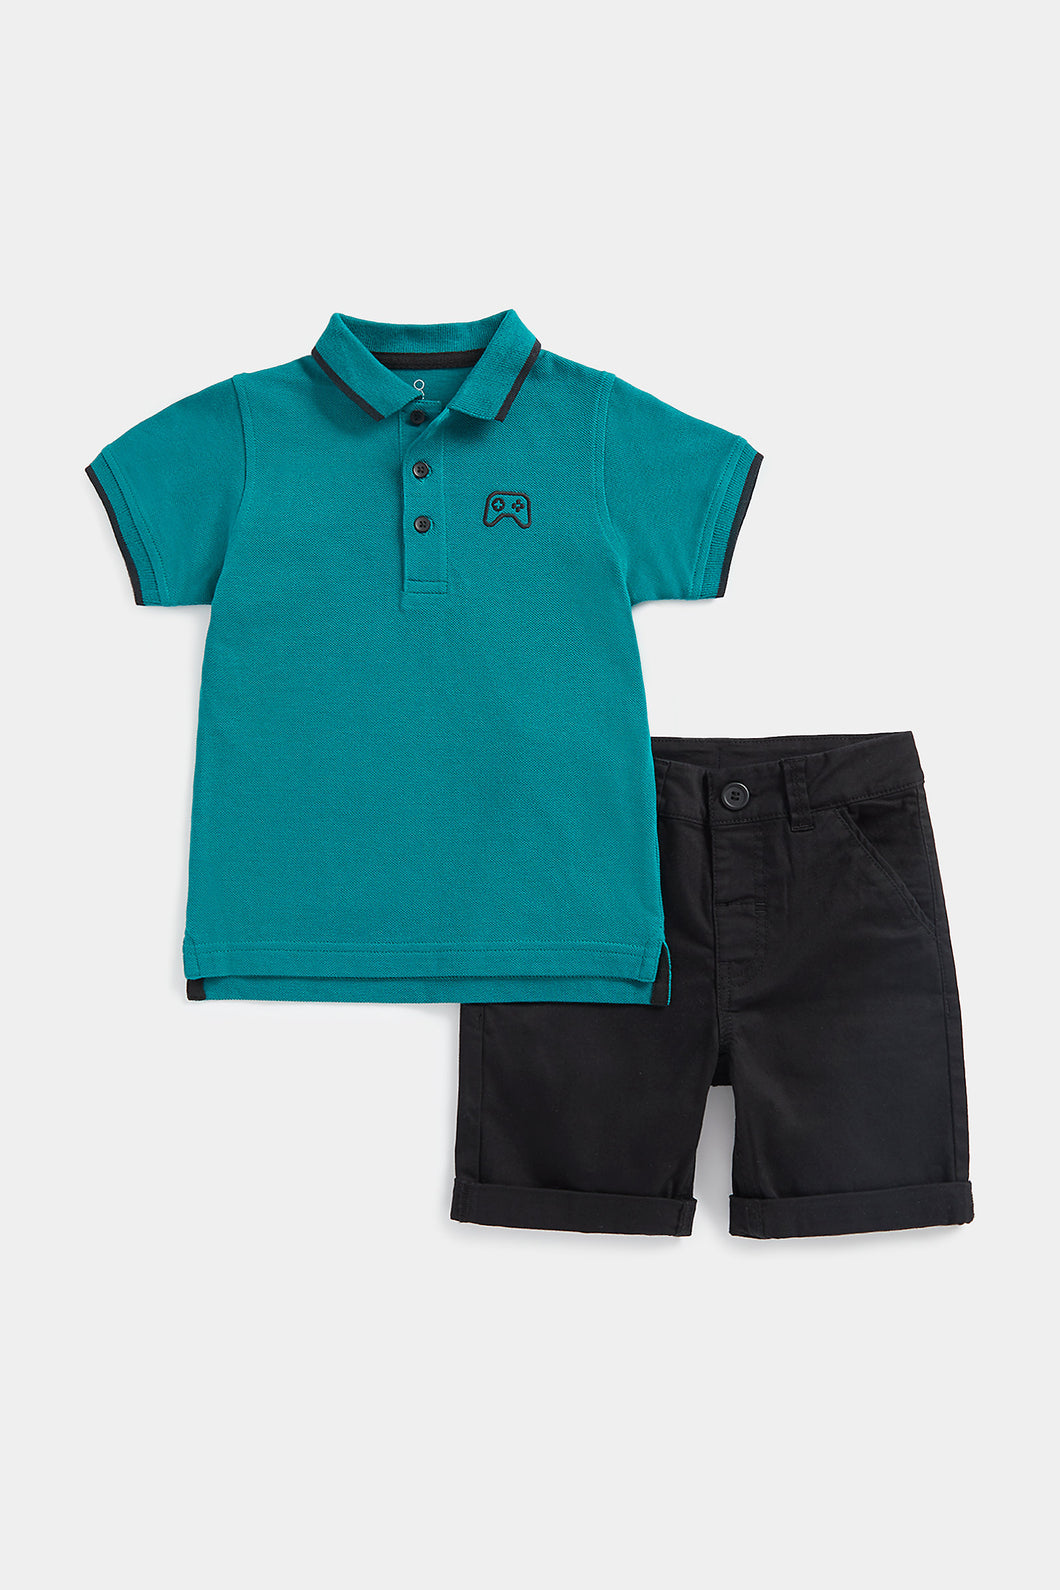 Mothercare Green Polo Shirt and Black Shorts Set